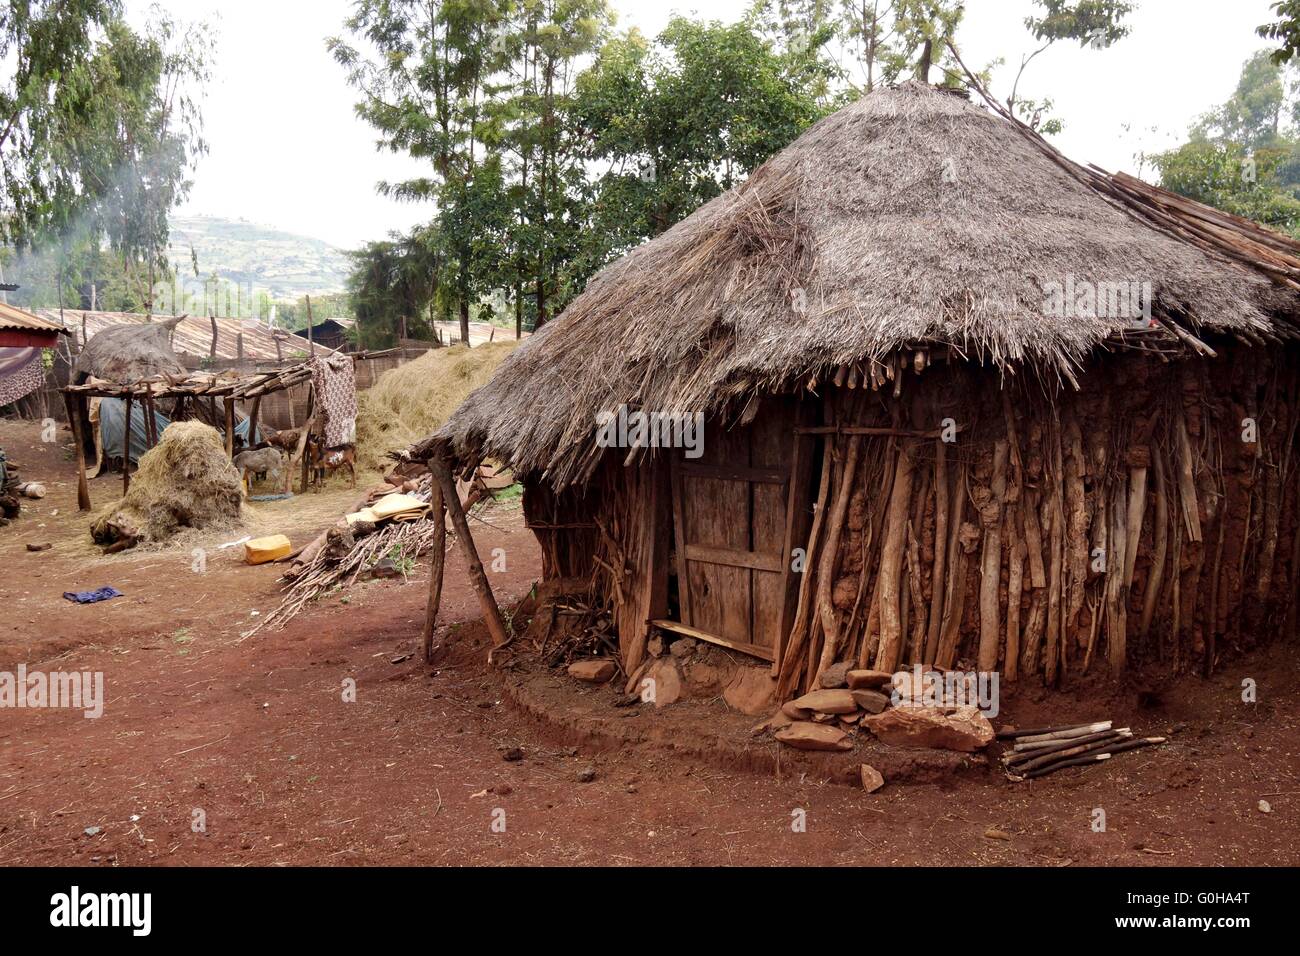 Mud hut in Ethiopia Stock Photo